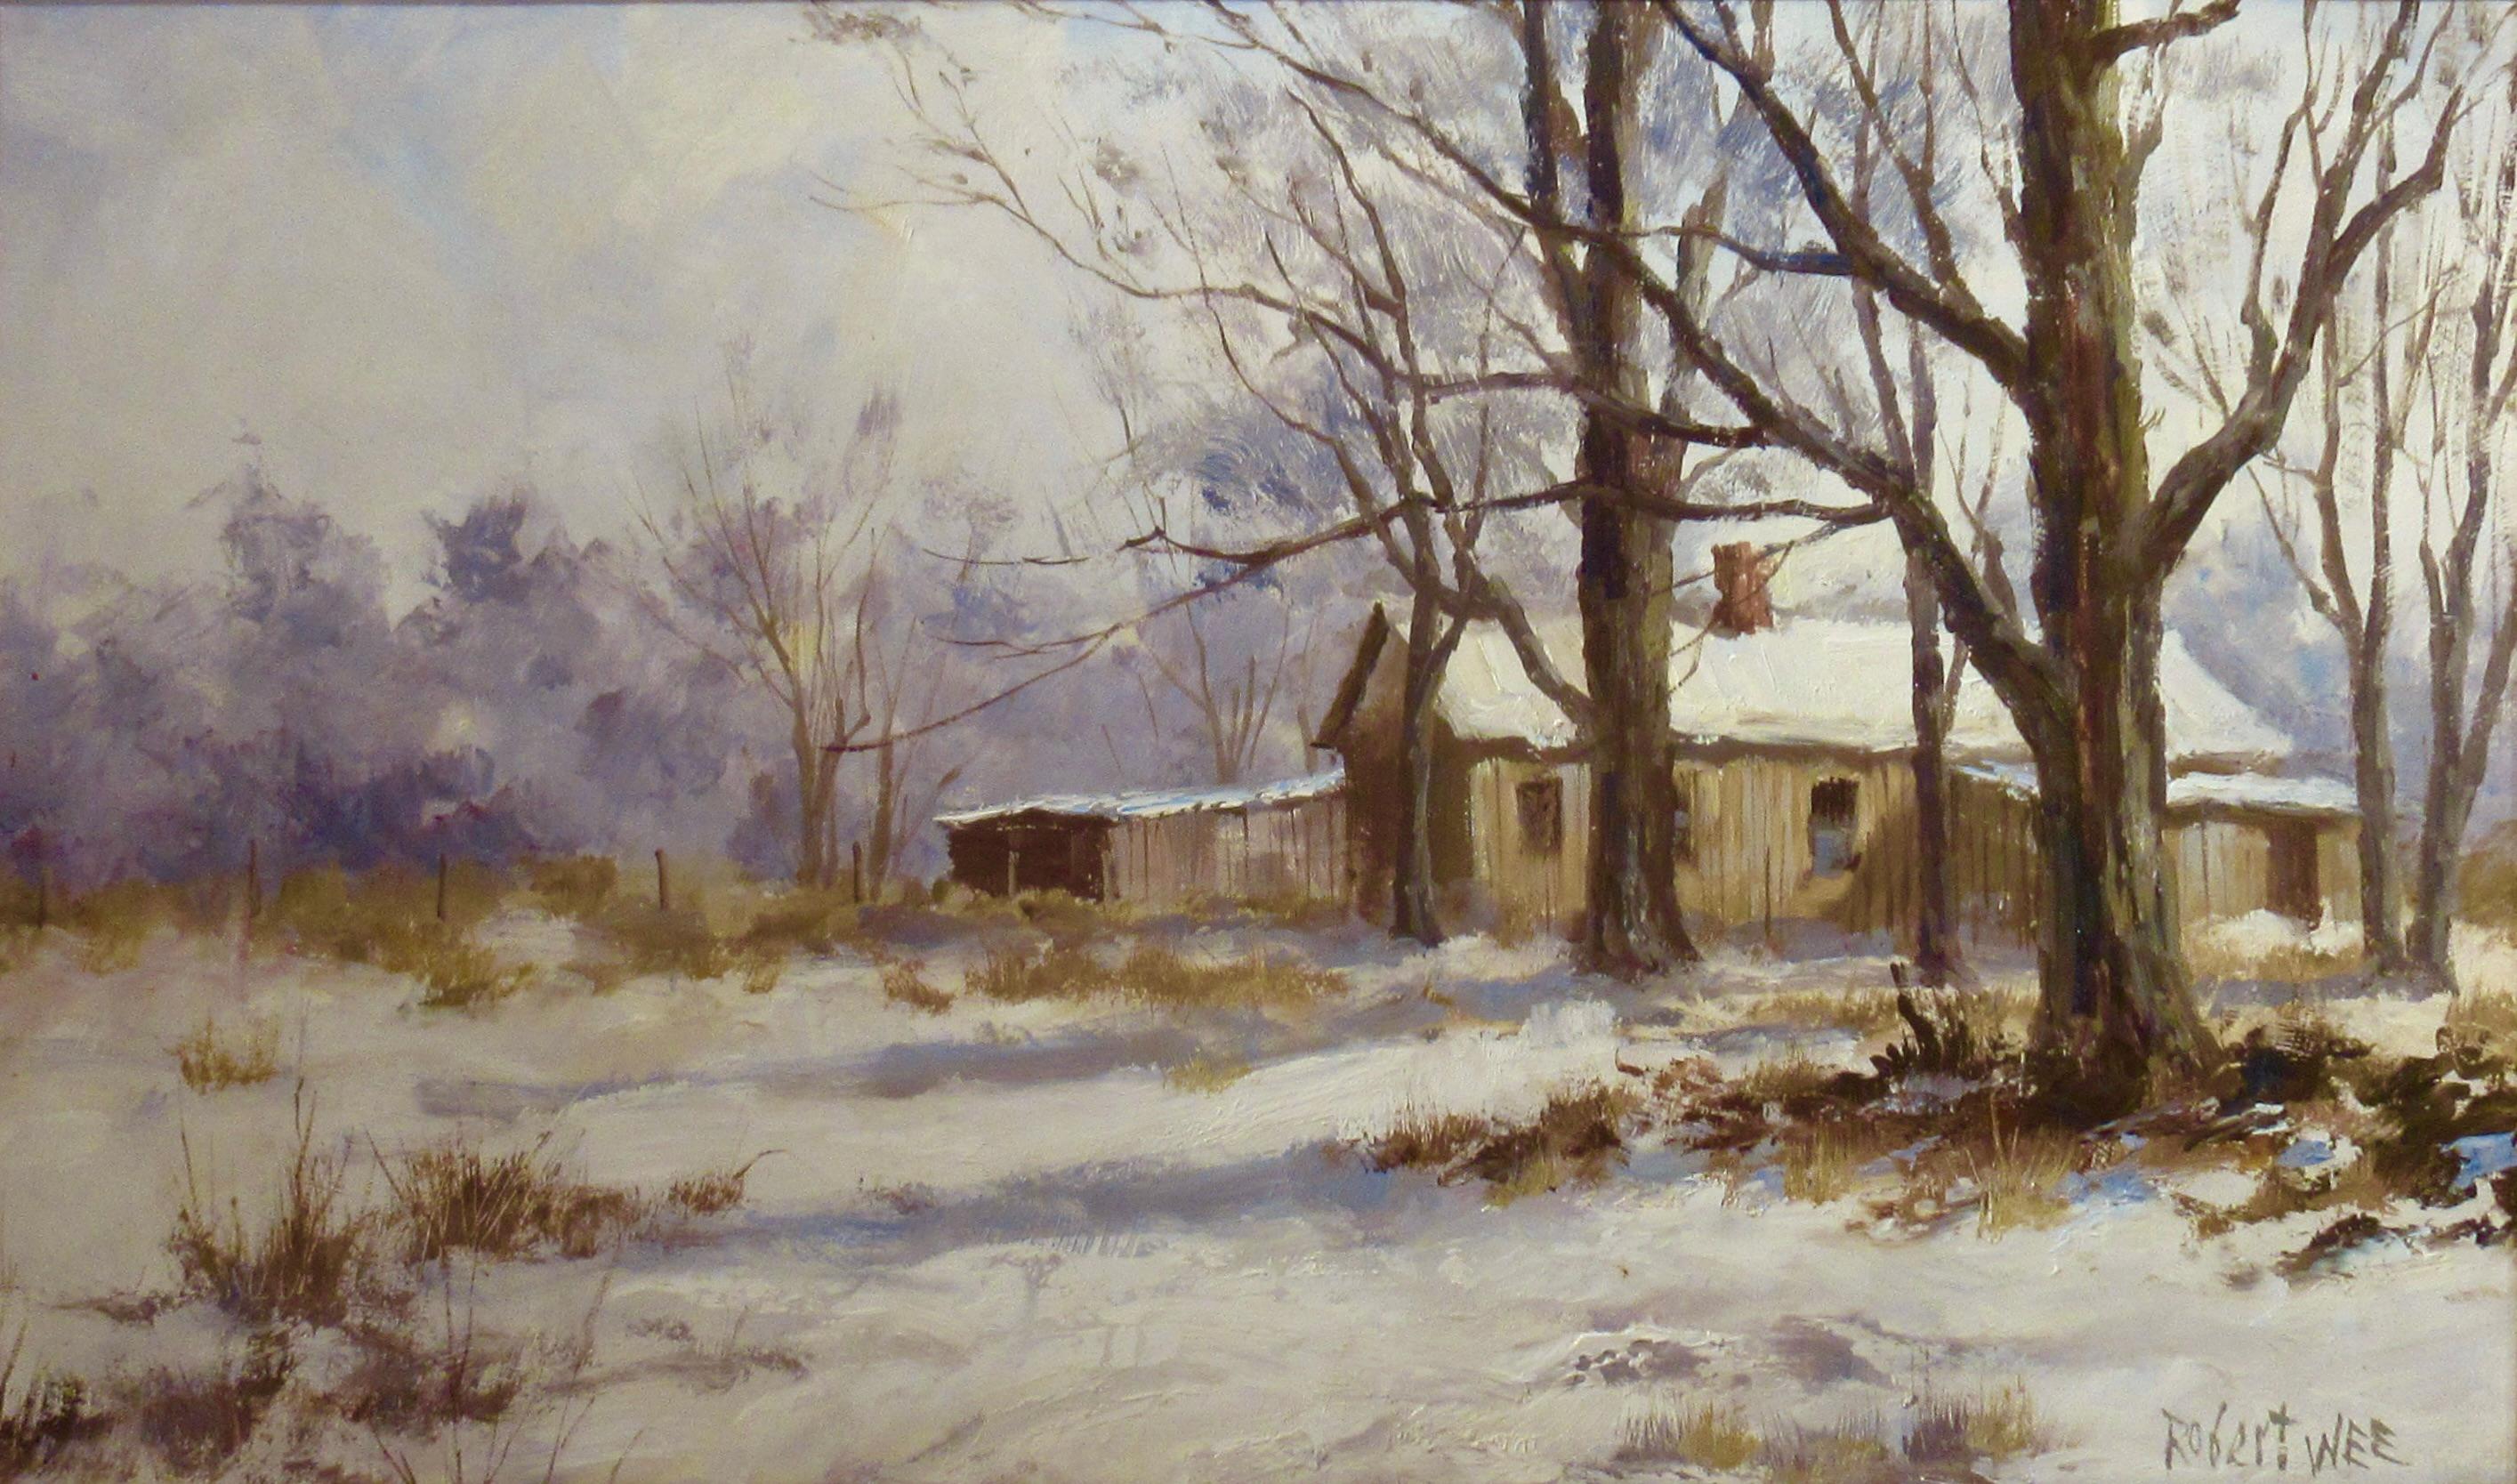 Landschaft mit Schnee – Painting von Robert Wee